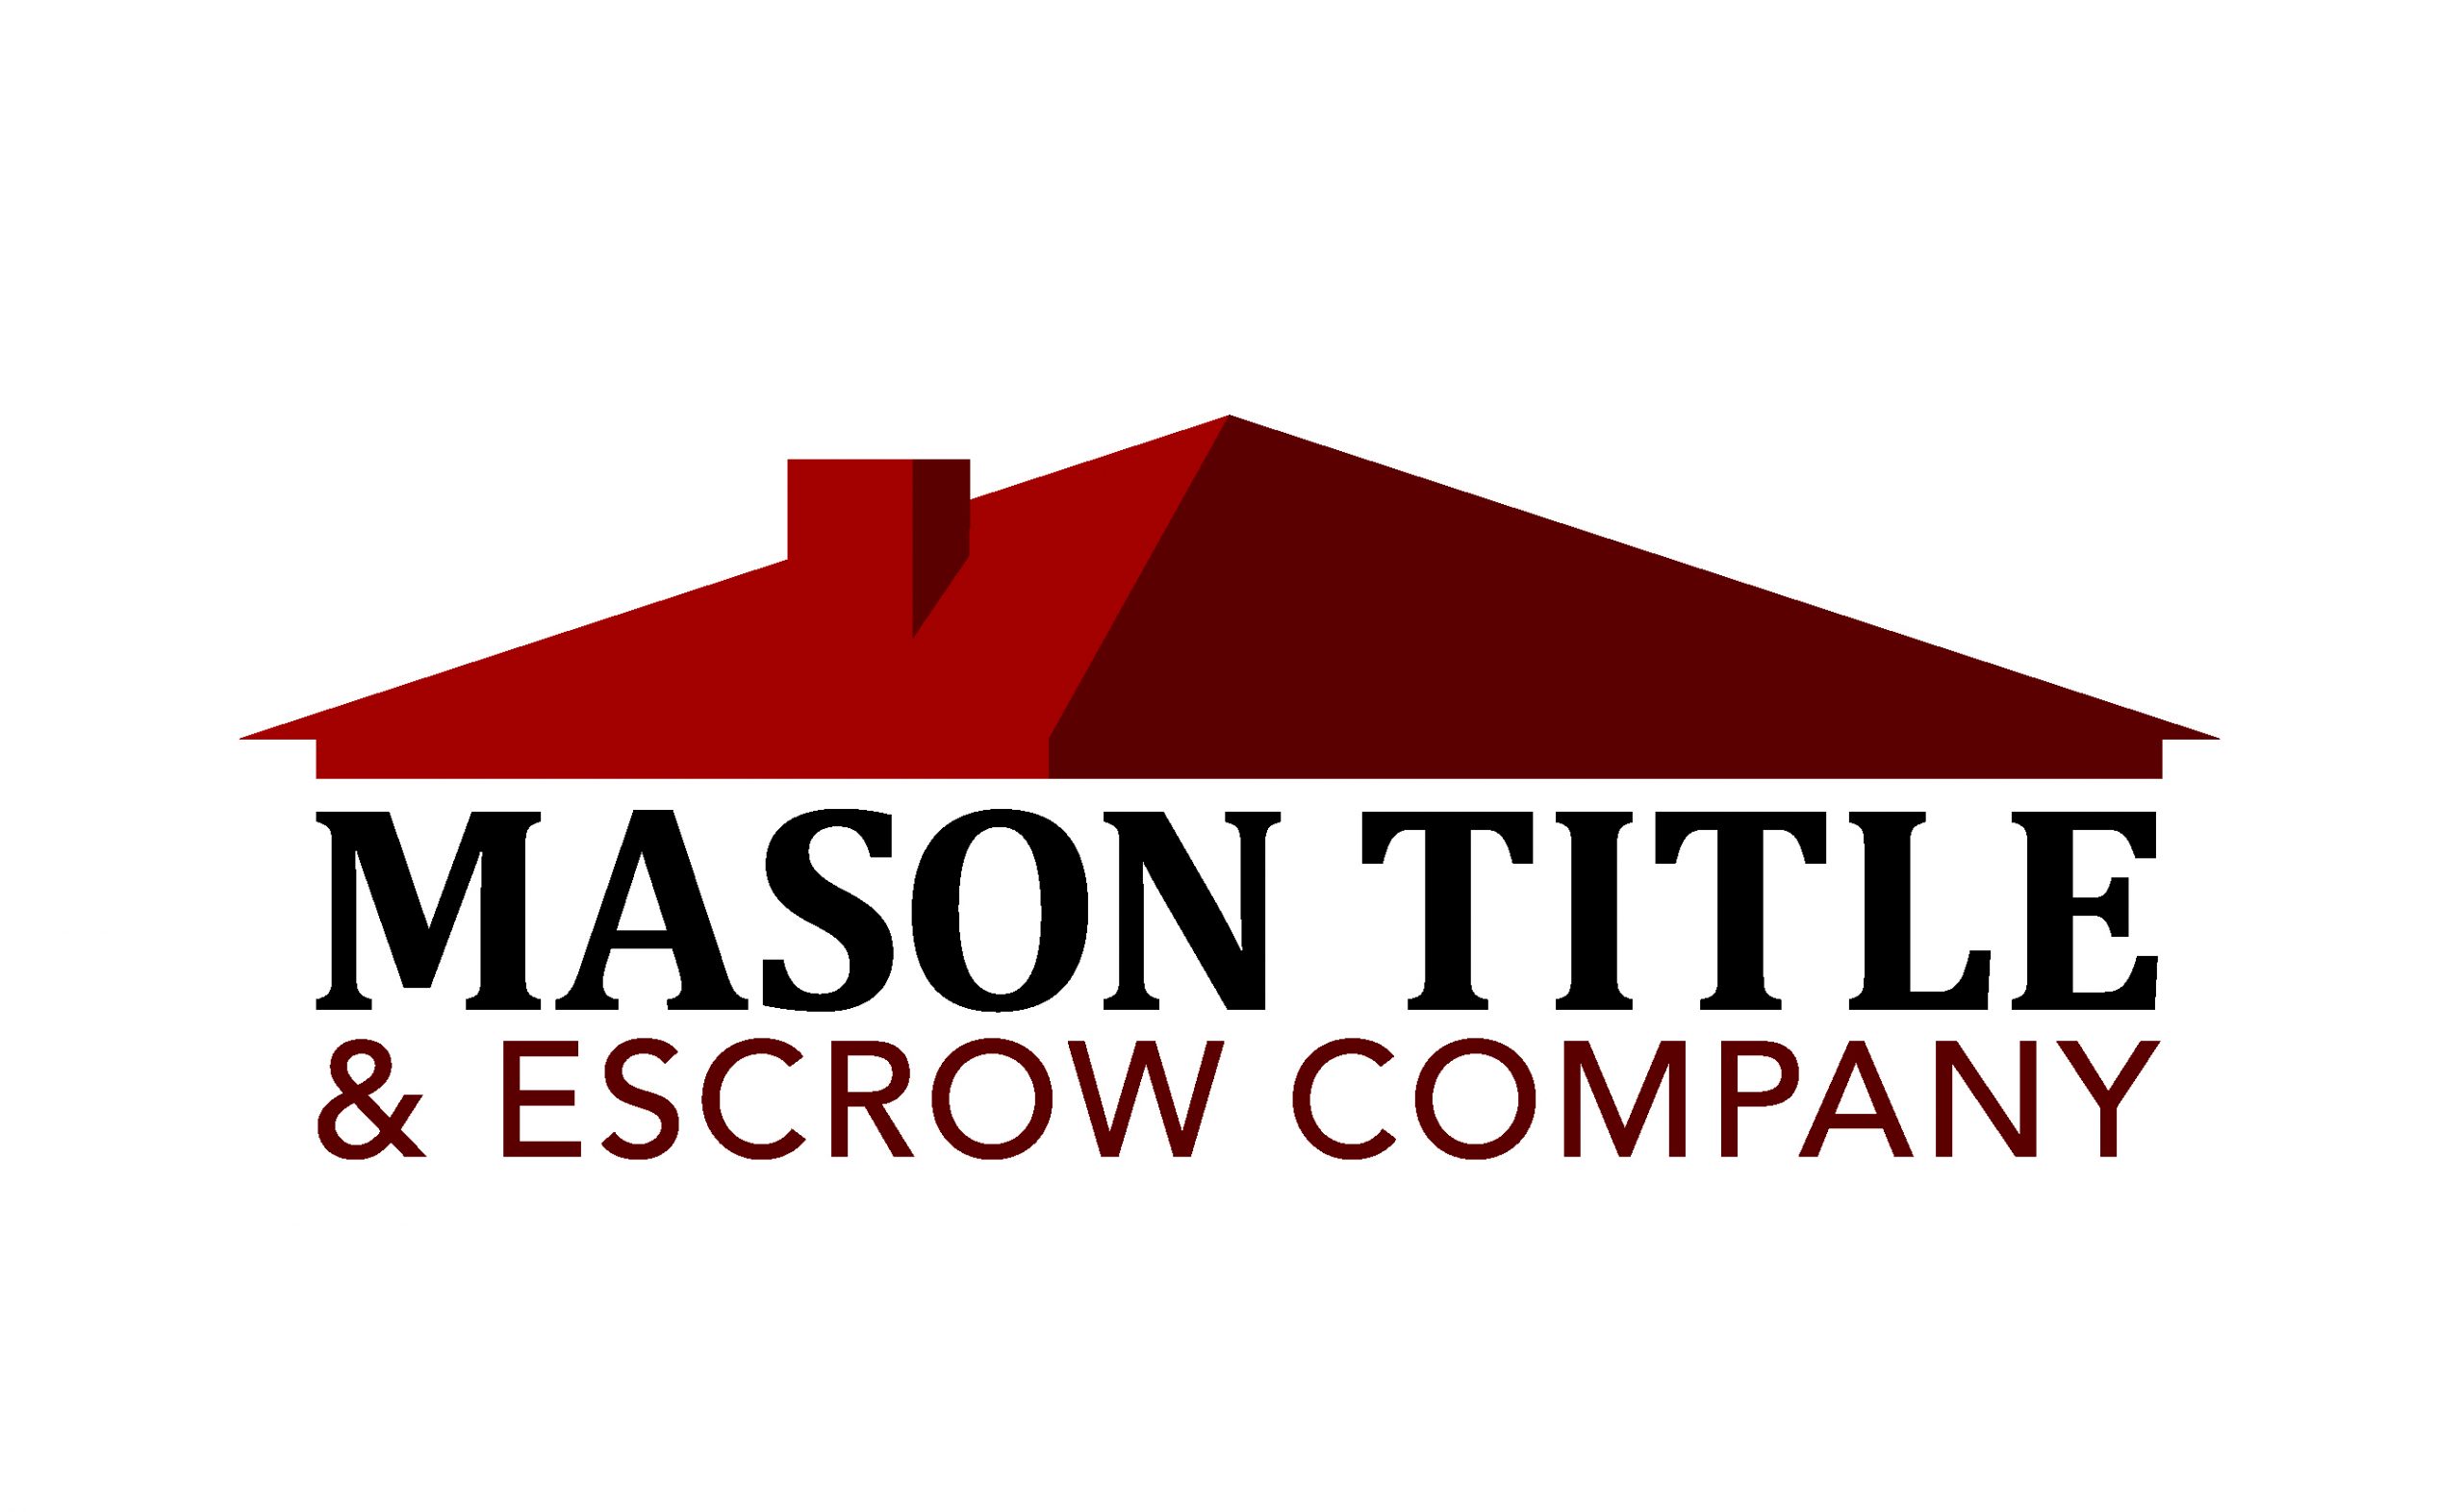 Mason Title & Escrow Company